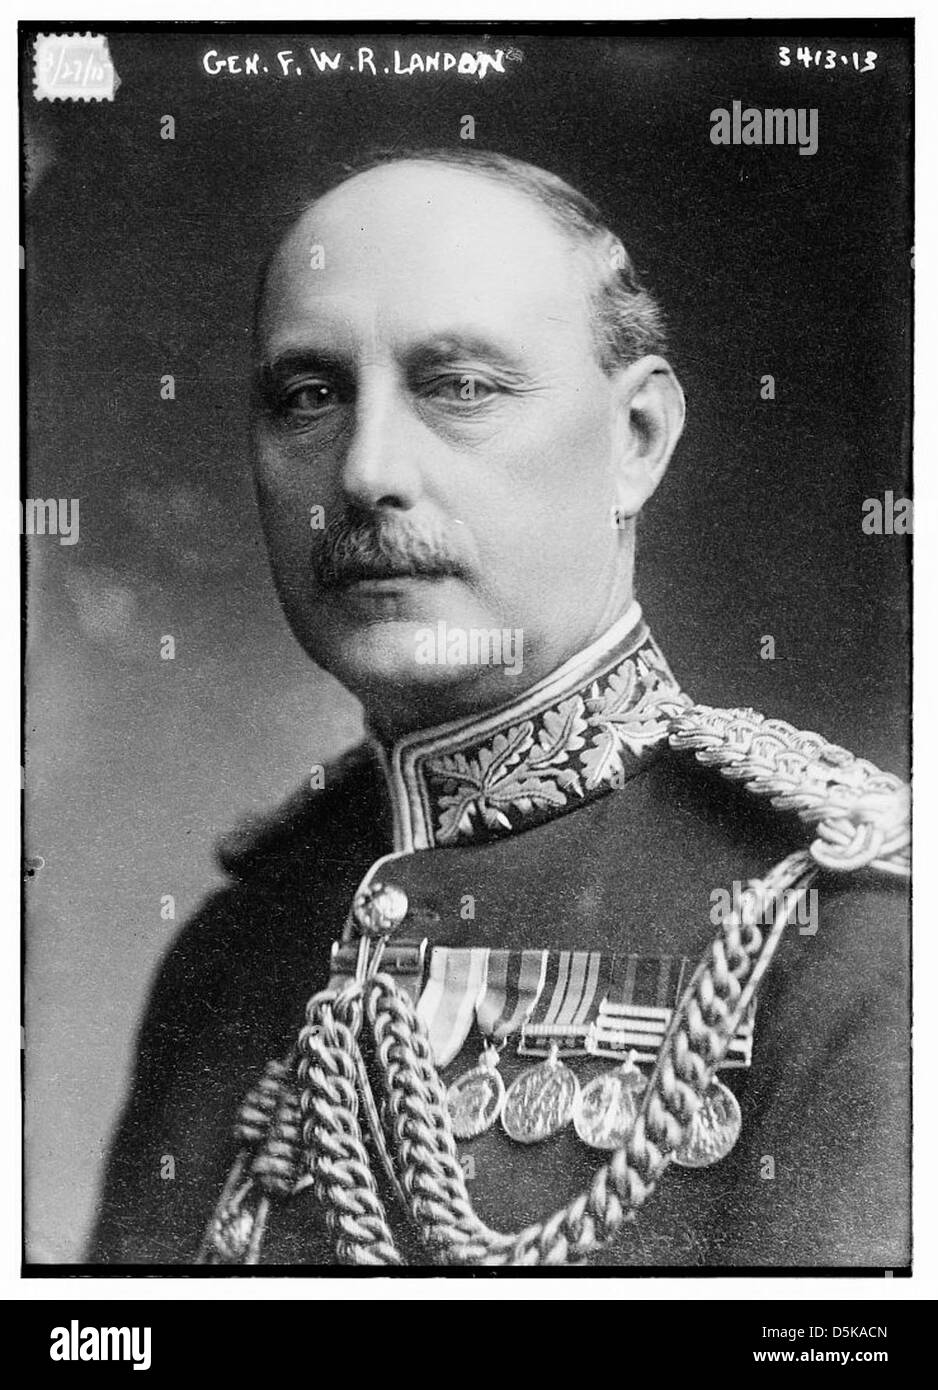 Le général F.W.R. [C.-à-d., B.] Landon (LOC) Banque D'Images